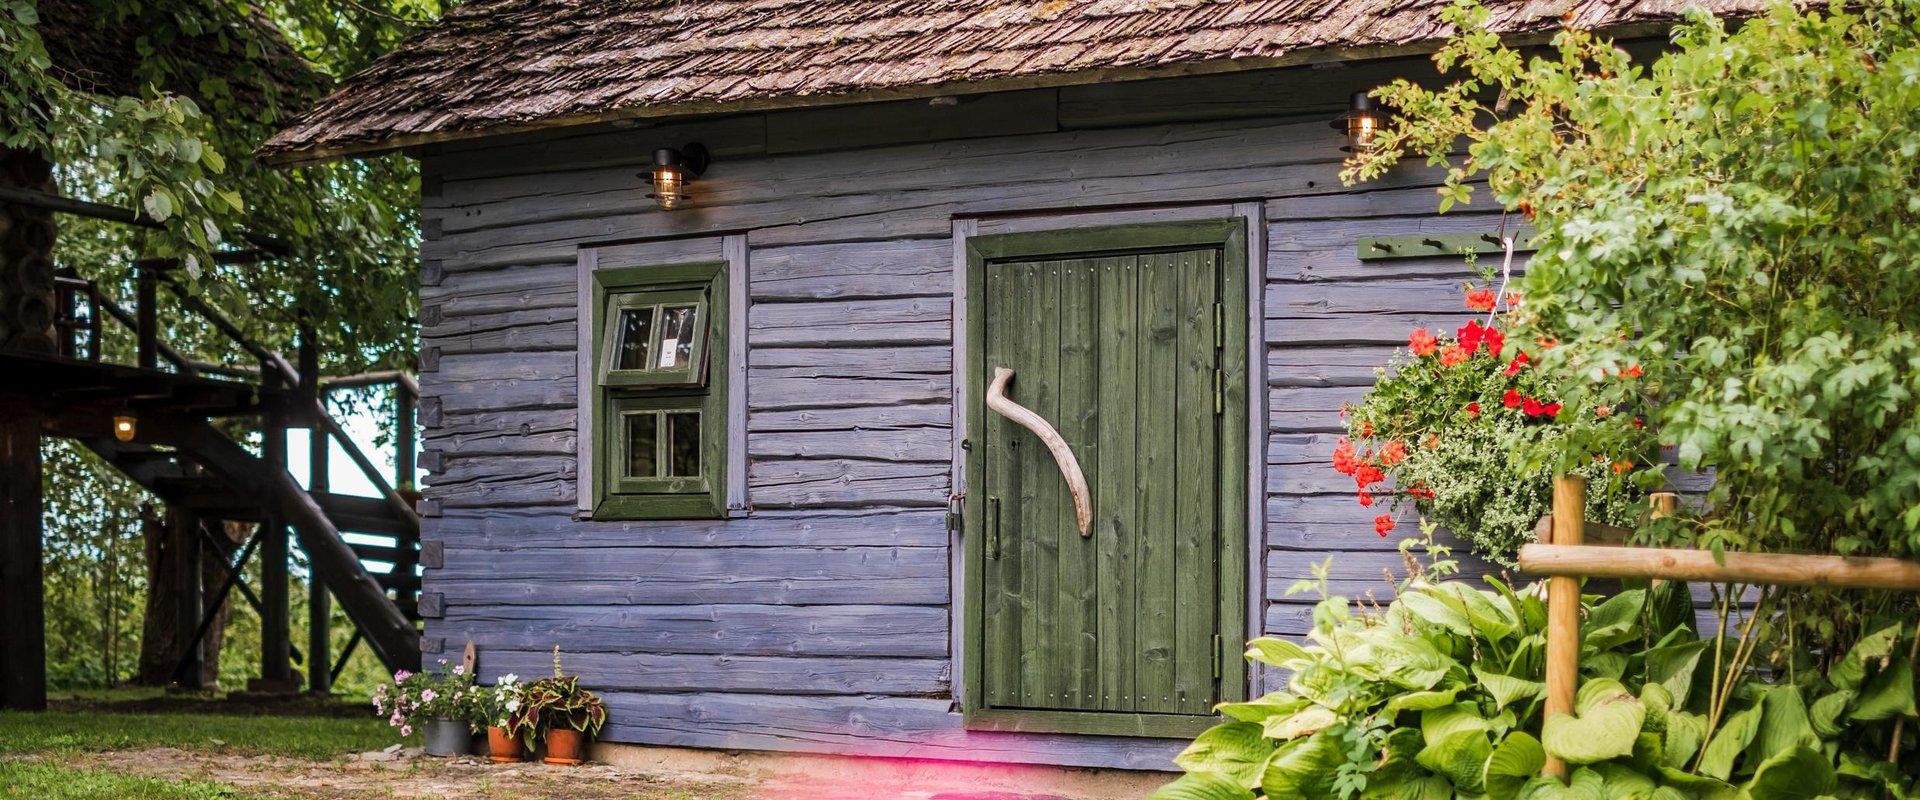 Soomaa Puhkekülas ootavad külastajat erinevad saunad, kus hingega nautida saunalava mõnusid. Maasaunas ja suures Soome saunas saad tervist turgutada v